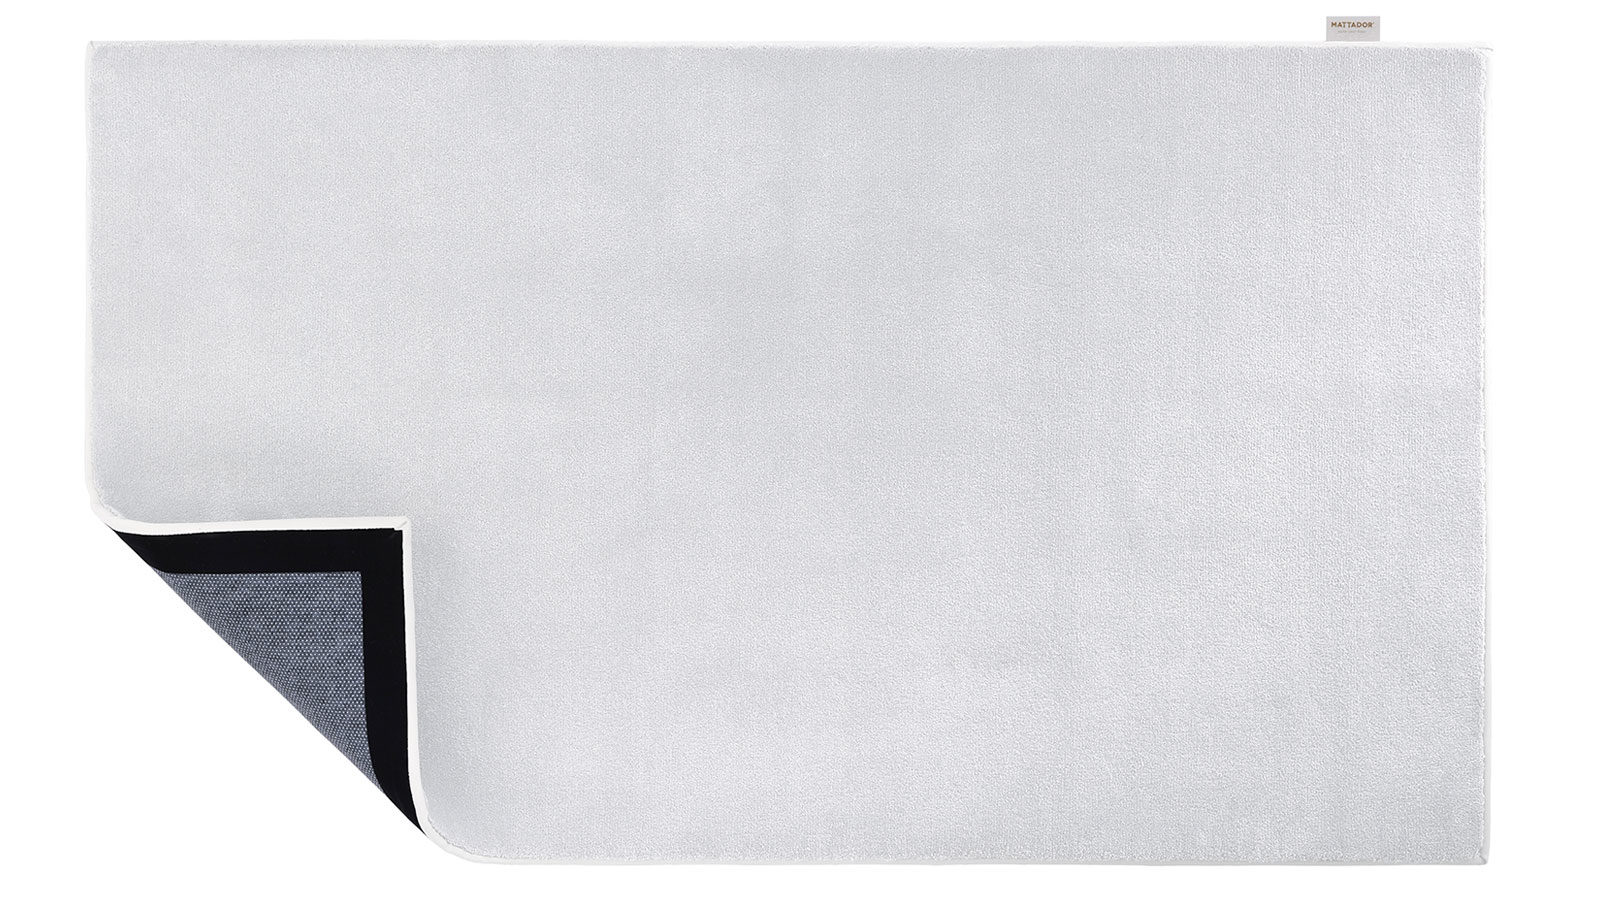 Bovenaanzicht van Tuxedo wit vloerkleed met in de hoek zicht op onderzijde